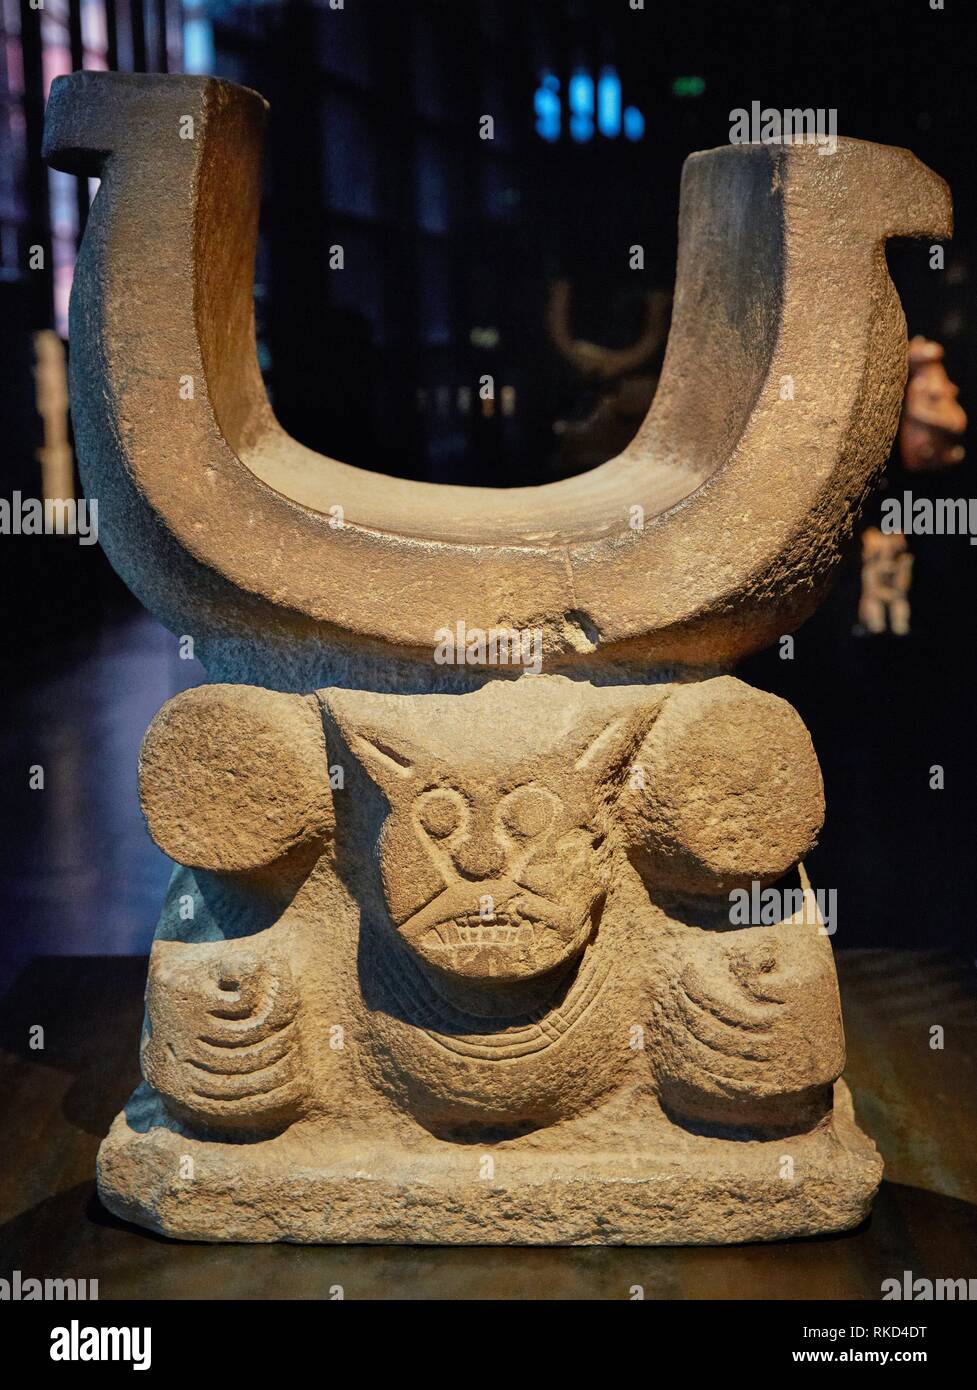 Schamanische Bank. Ecuador. Musée du Quai Branly Museum, Spezialisiert für primitiv oder tribal Arts, Architekt Jean Nouvel. Paris. Frankreich Stockfoto